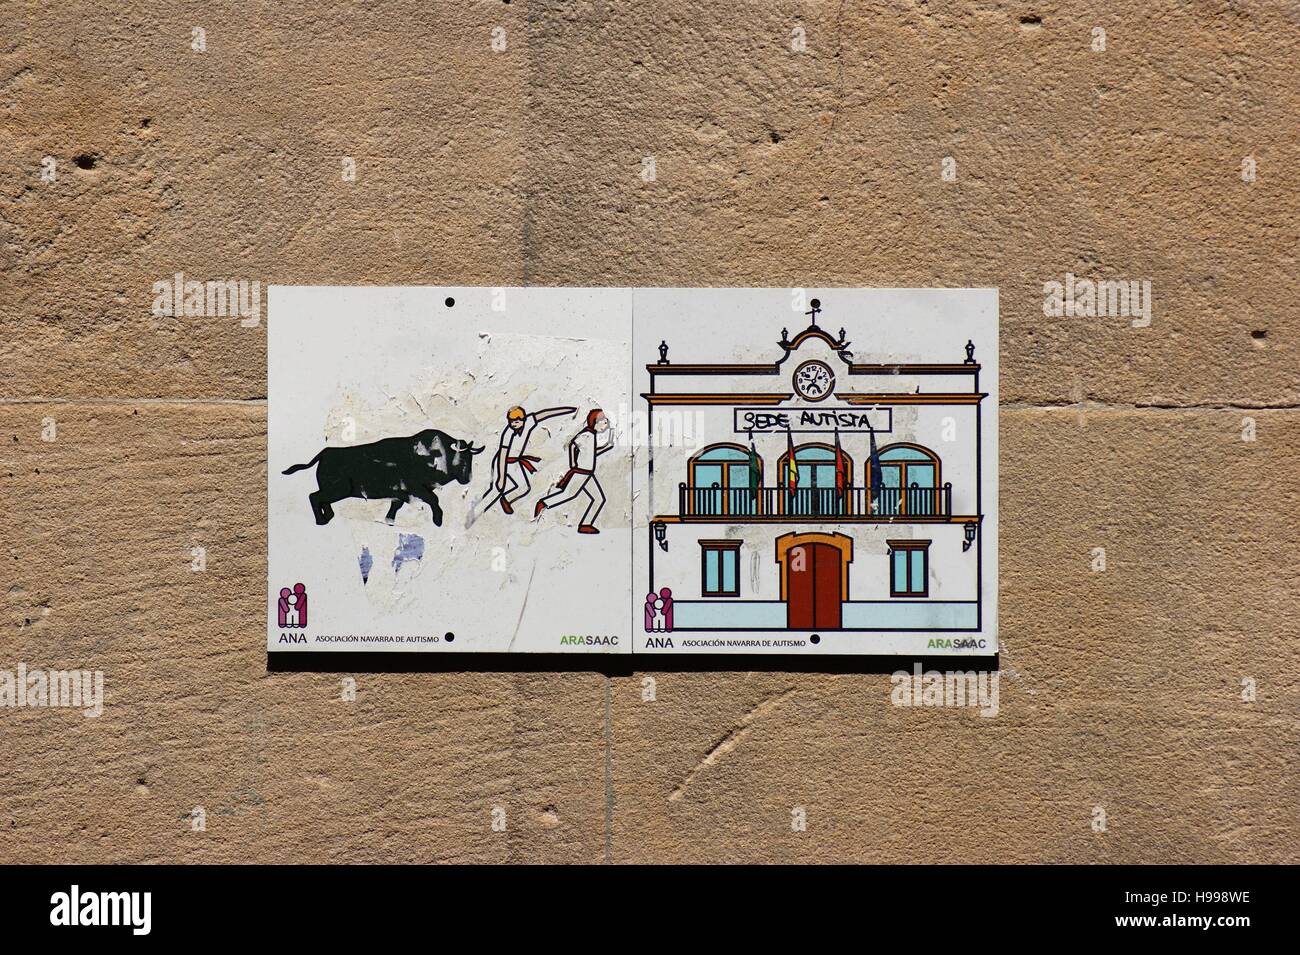 Fliesen auf einer Außenwand zeigen den jährlichen Lauf der Bullen und das historische Rathaus in Pamplona, Spanien. Stockfoto